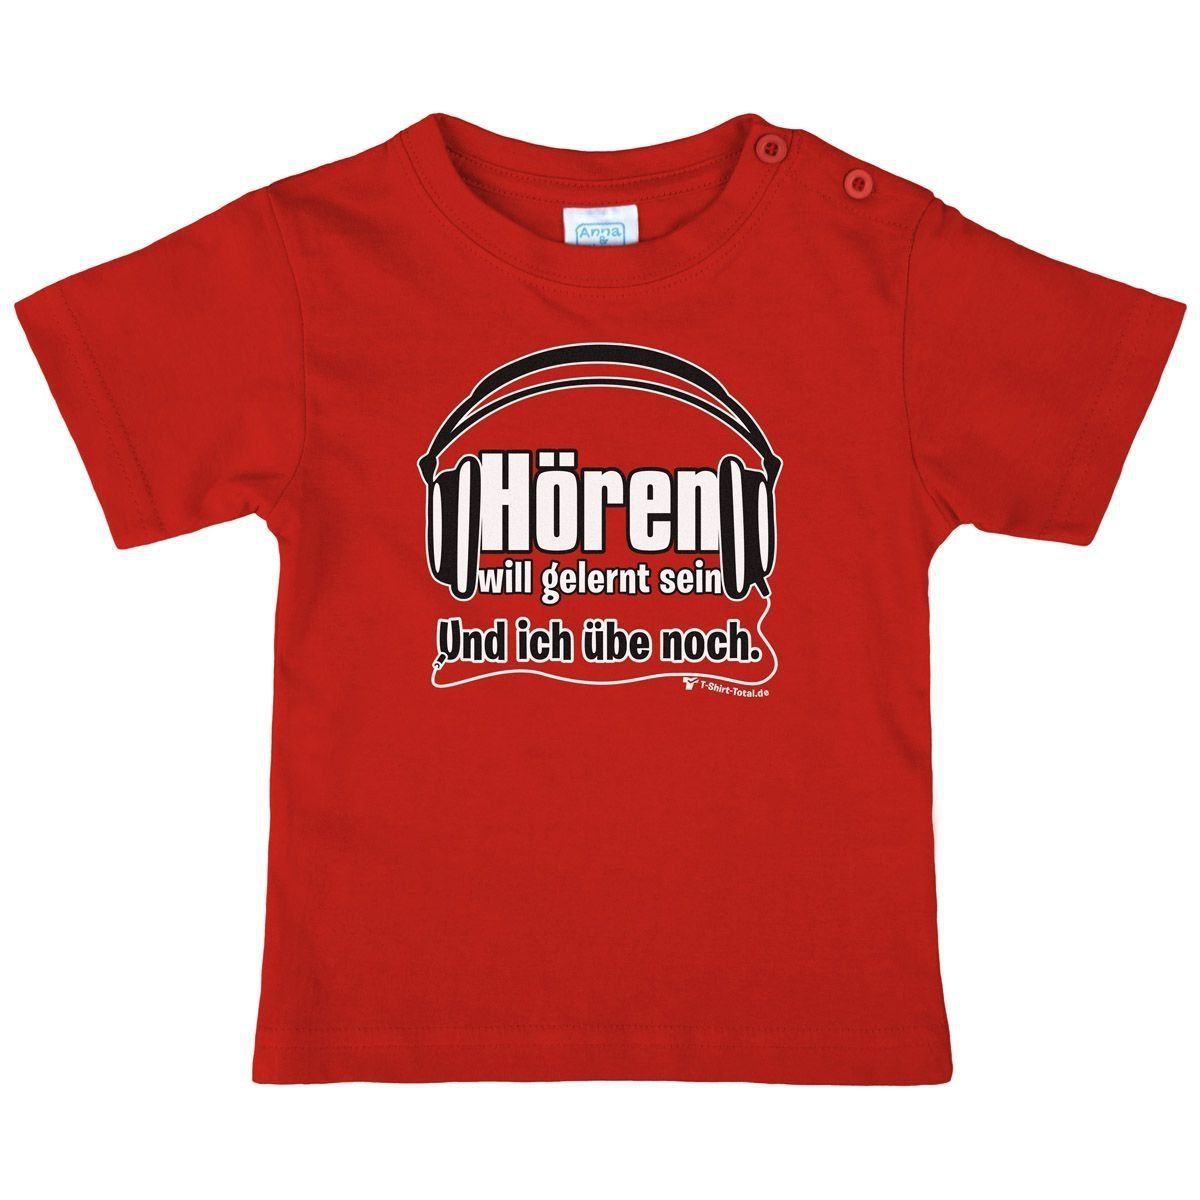 Hören will gelernt sein Kinder T-Shirt rot 104